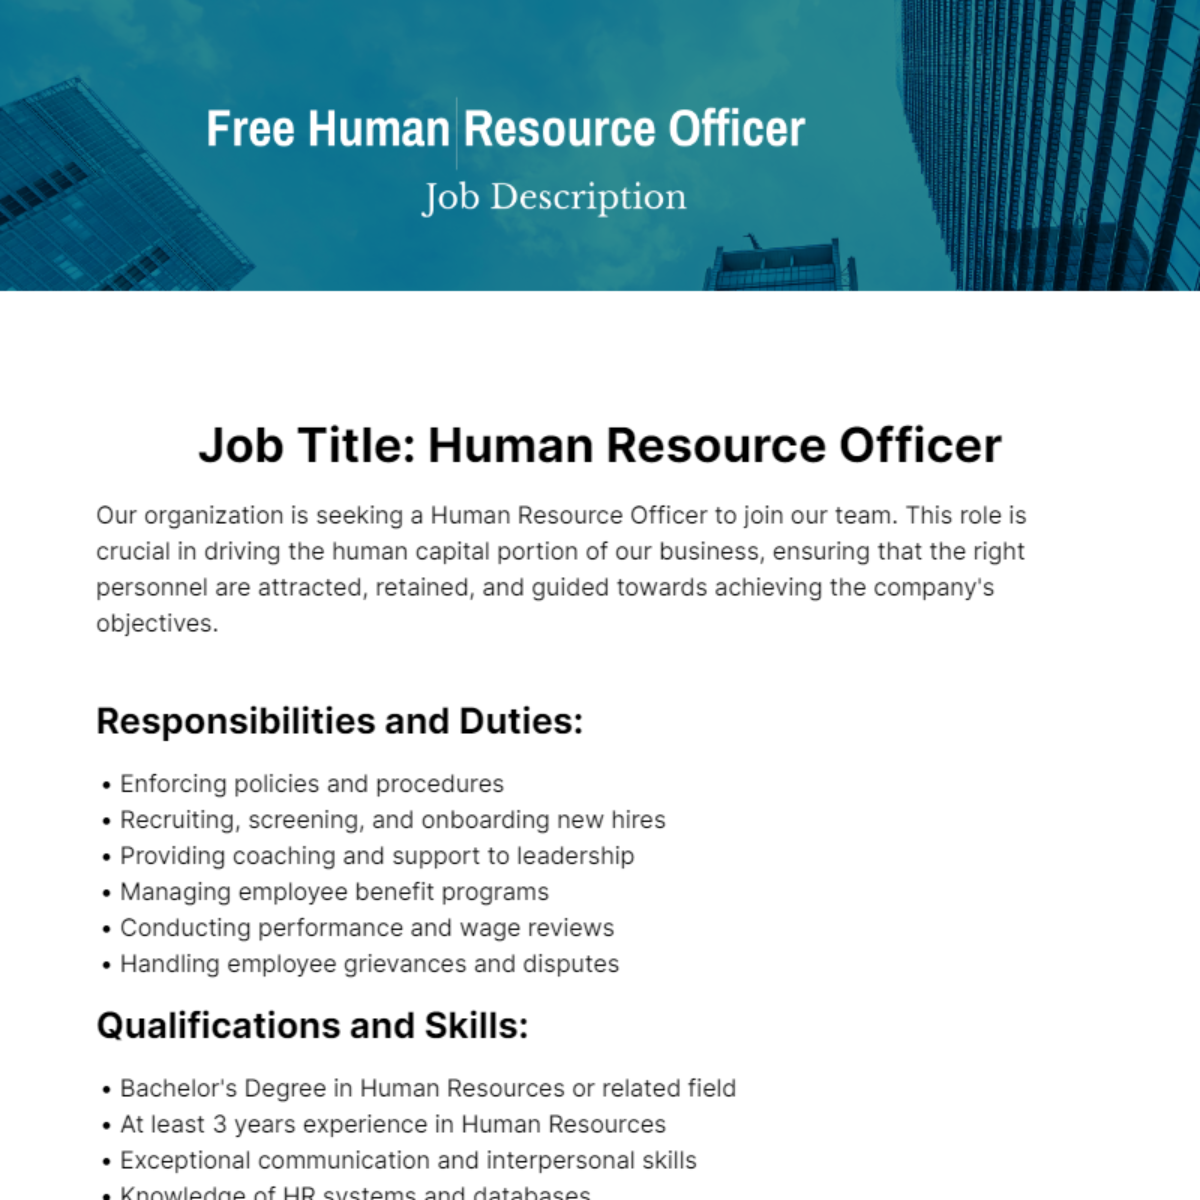 Human Resource Officer Job Description Template